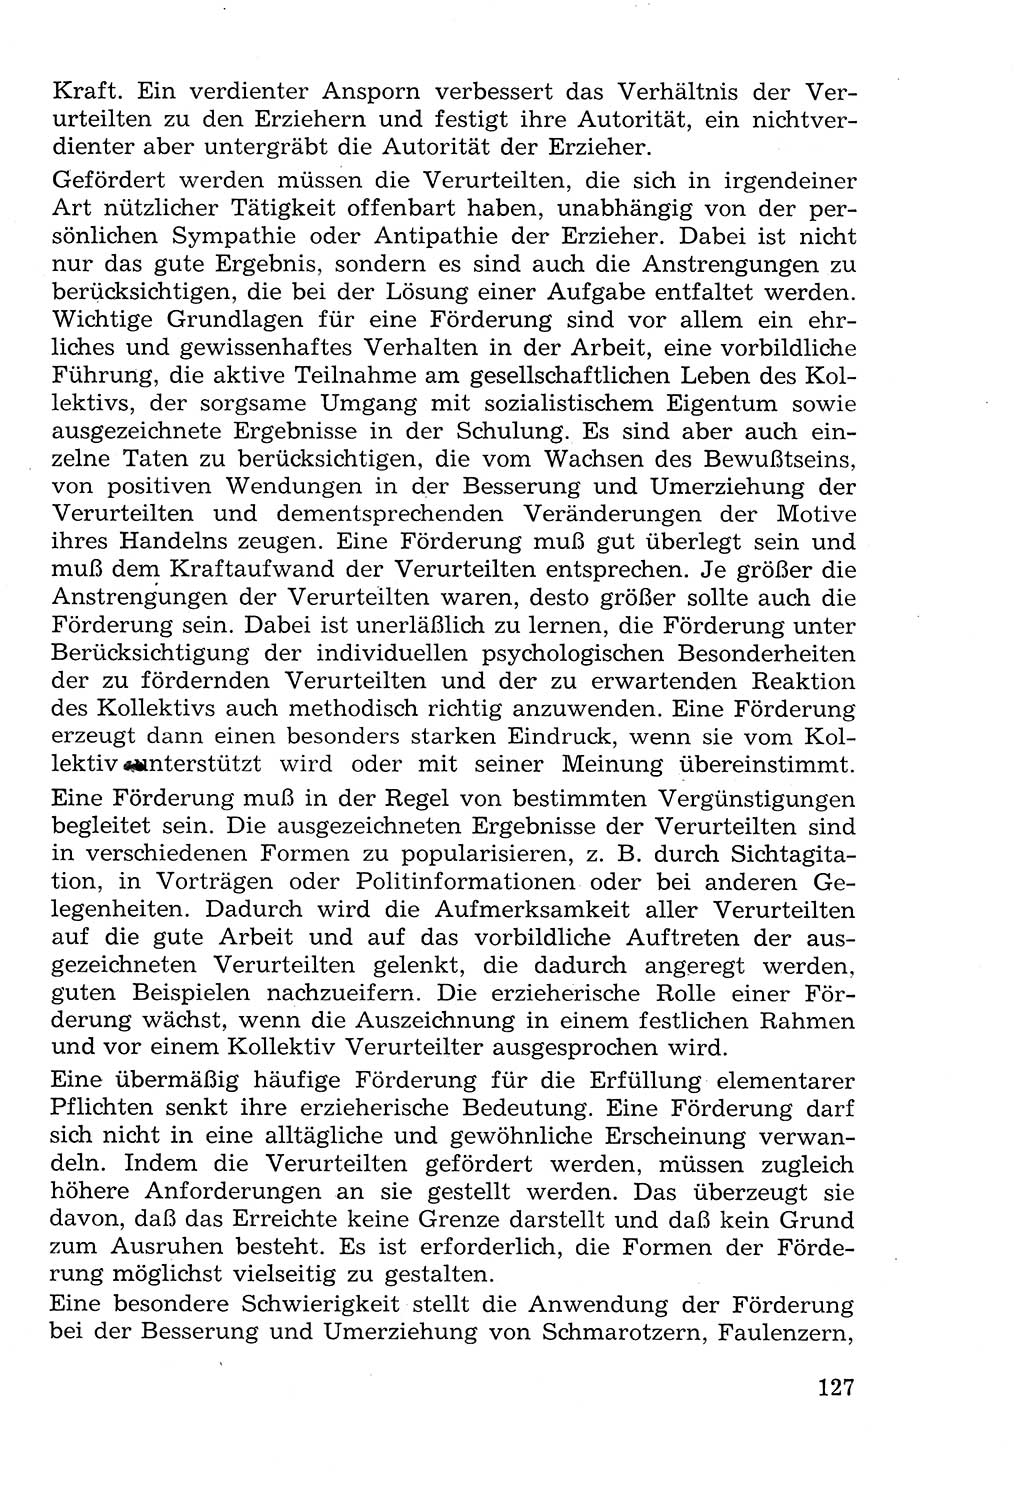 Lehrbuch der StrafvollzugspÃ¤dagogik [Deutsche Demokratische Republik (DDR)] 1969, Seite 127 (Lb. SV-Pd. DDR 1969, S. 127)